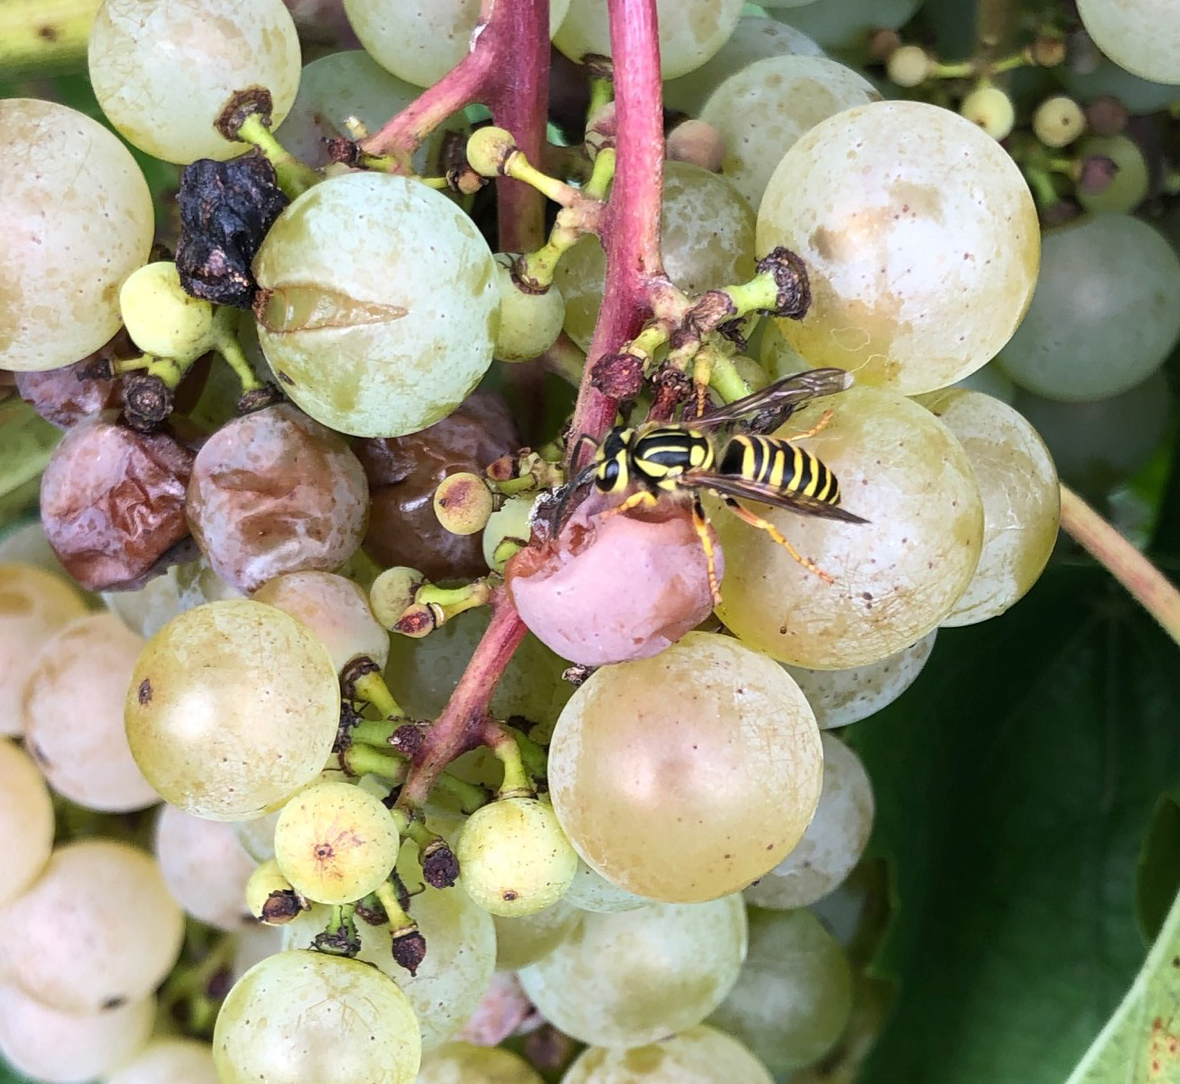 Yellowjackets feeding on grapes